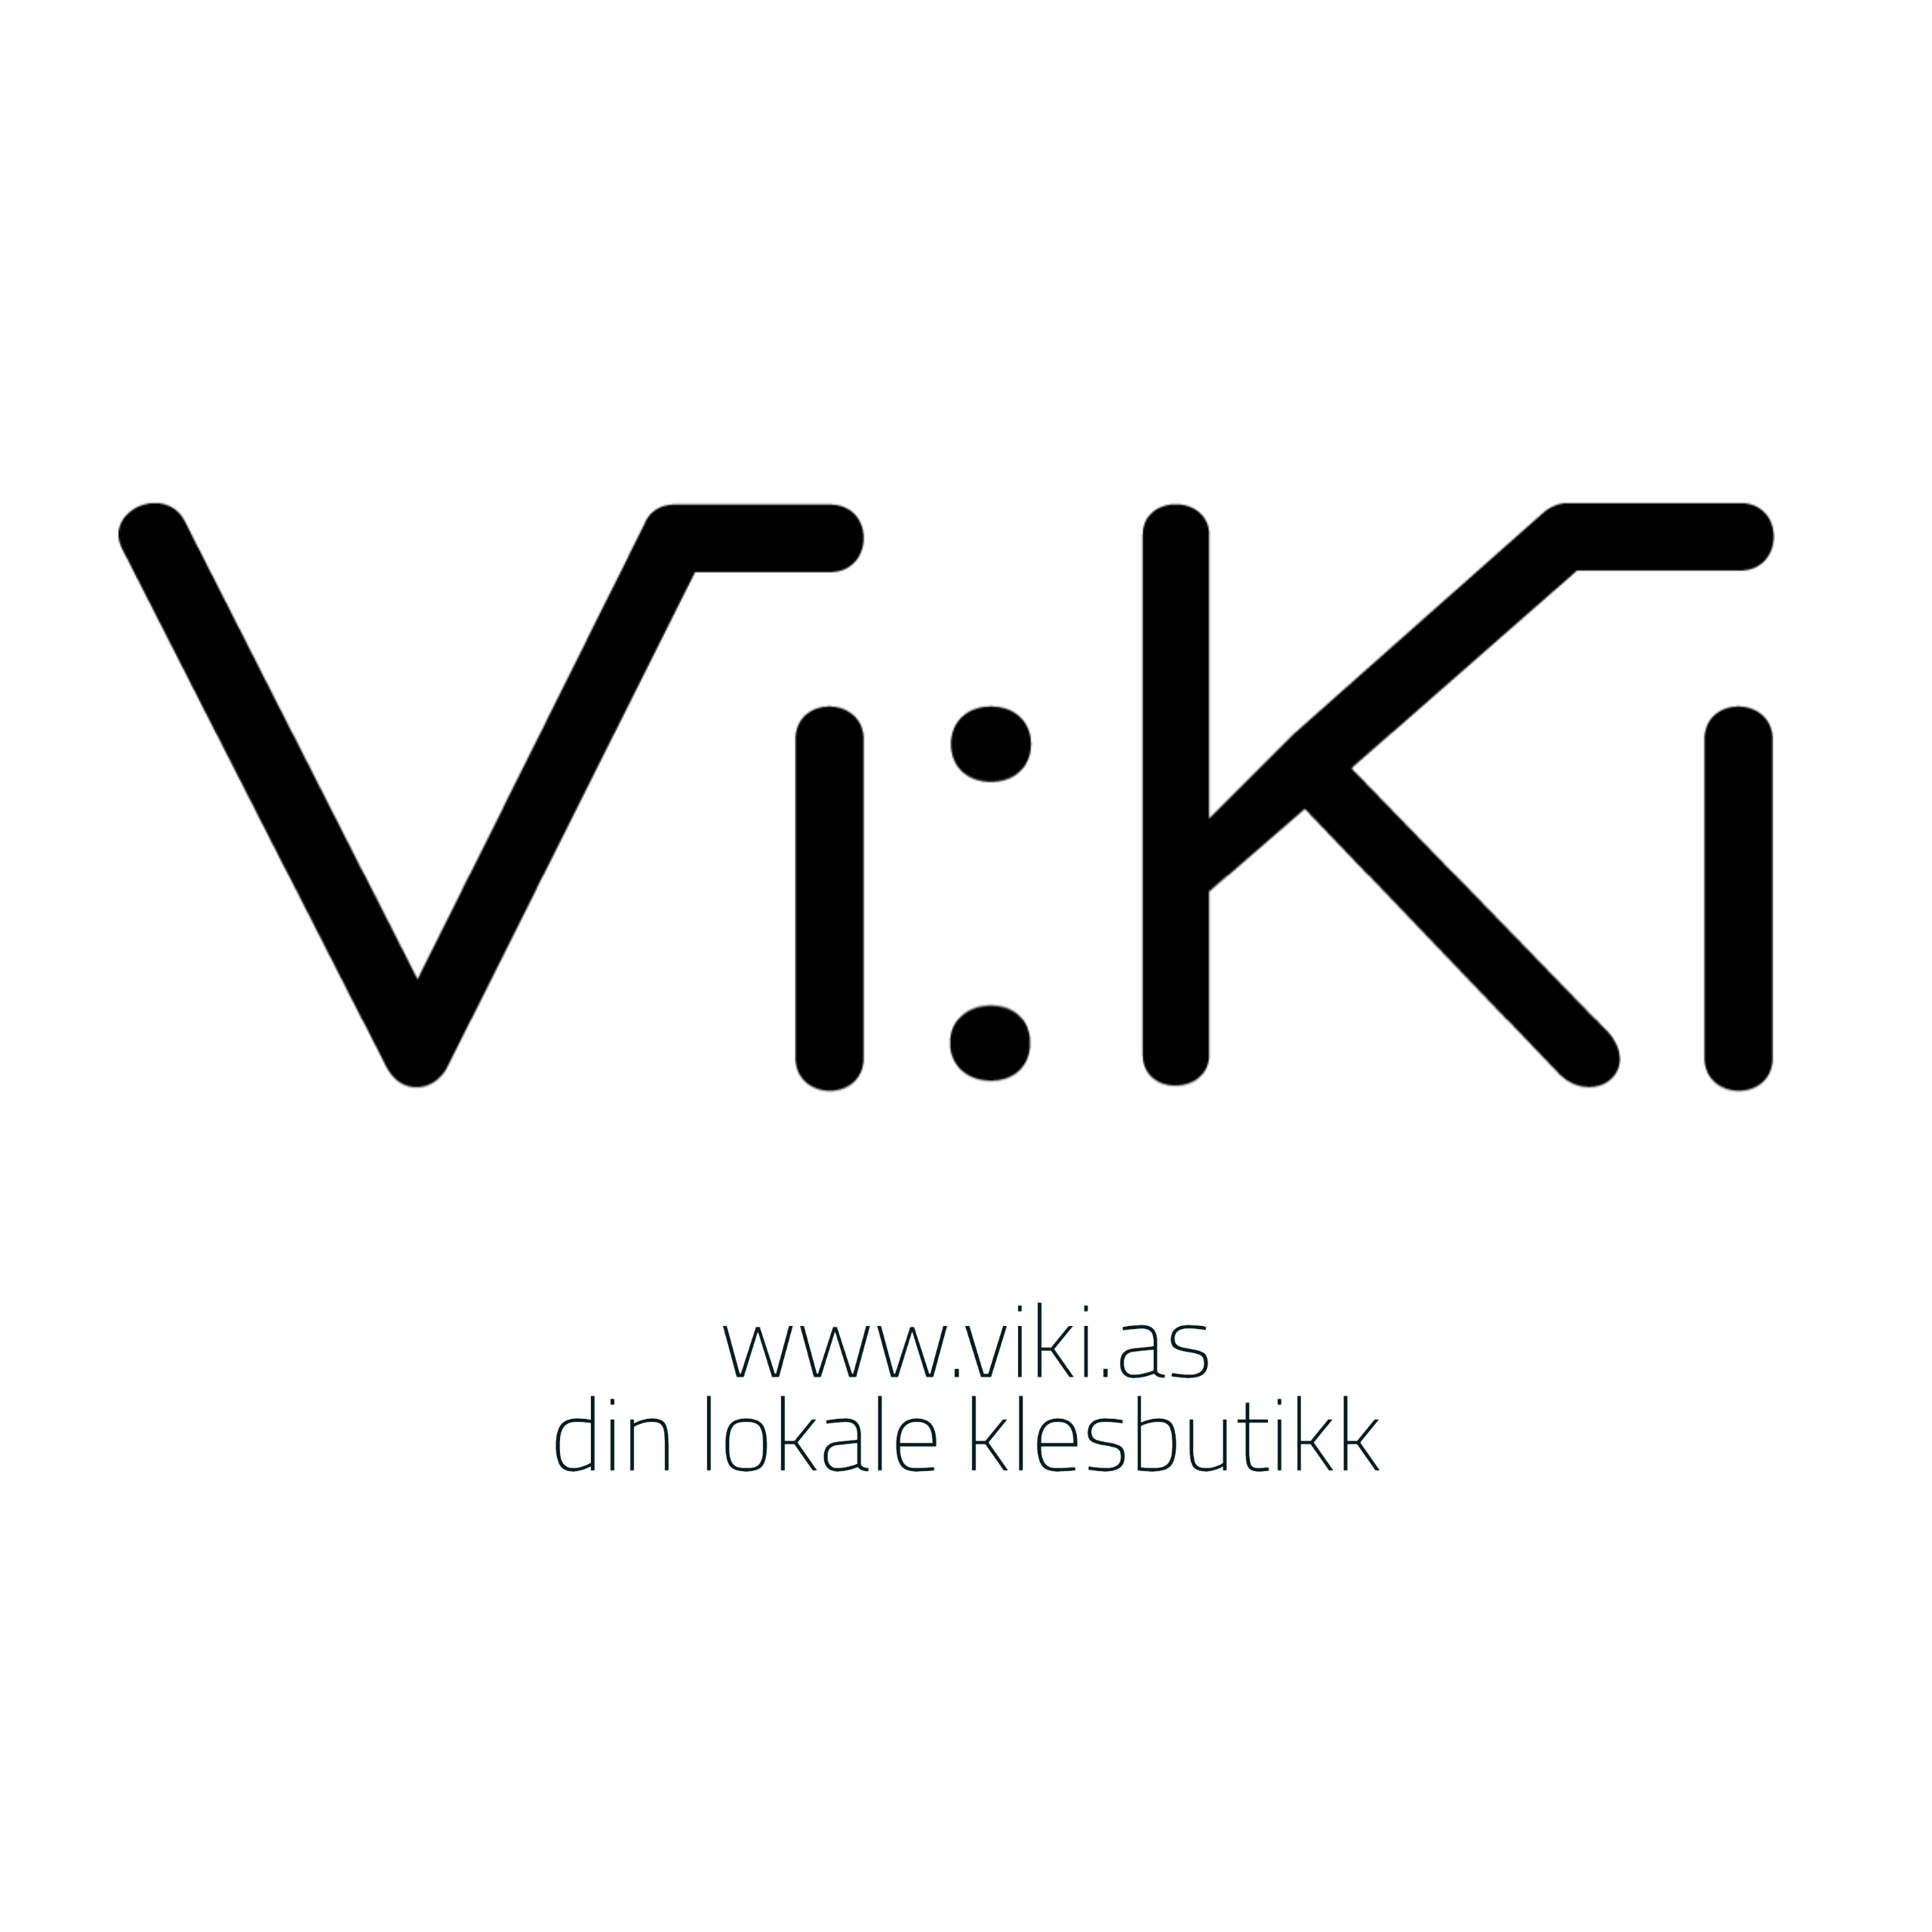 www.viki.as